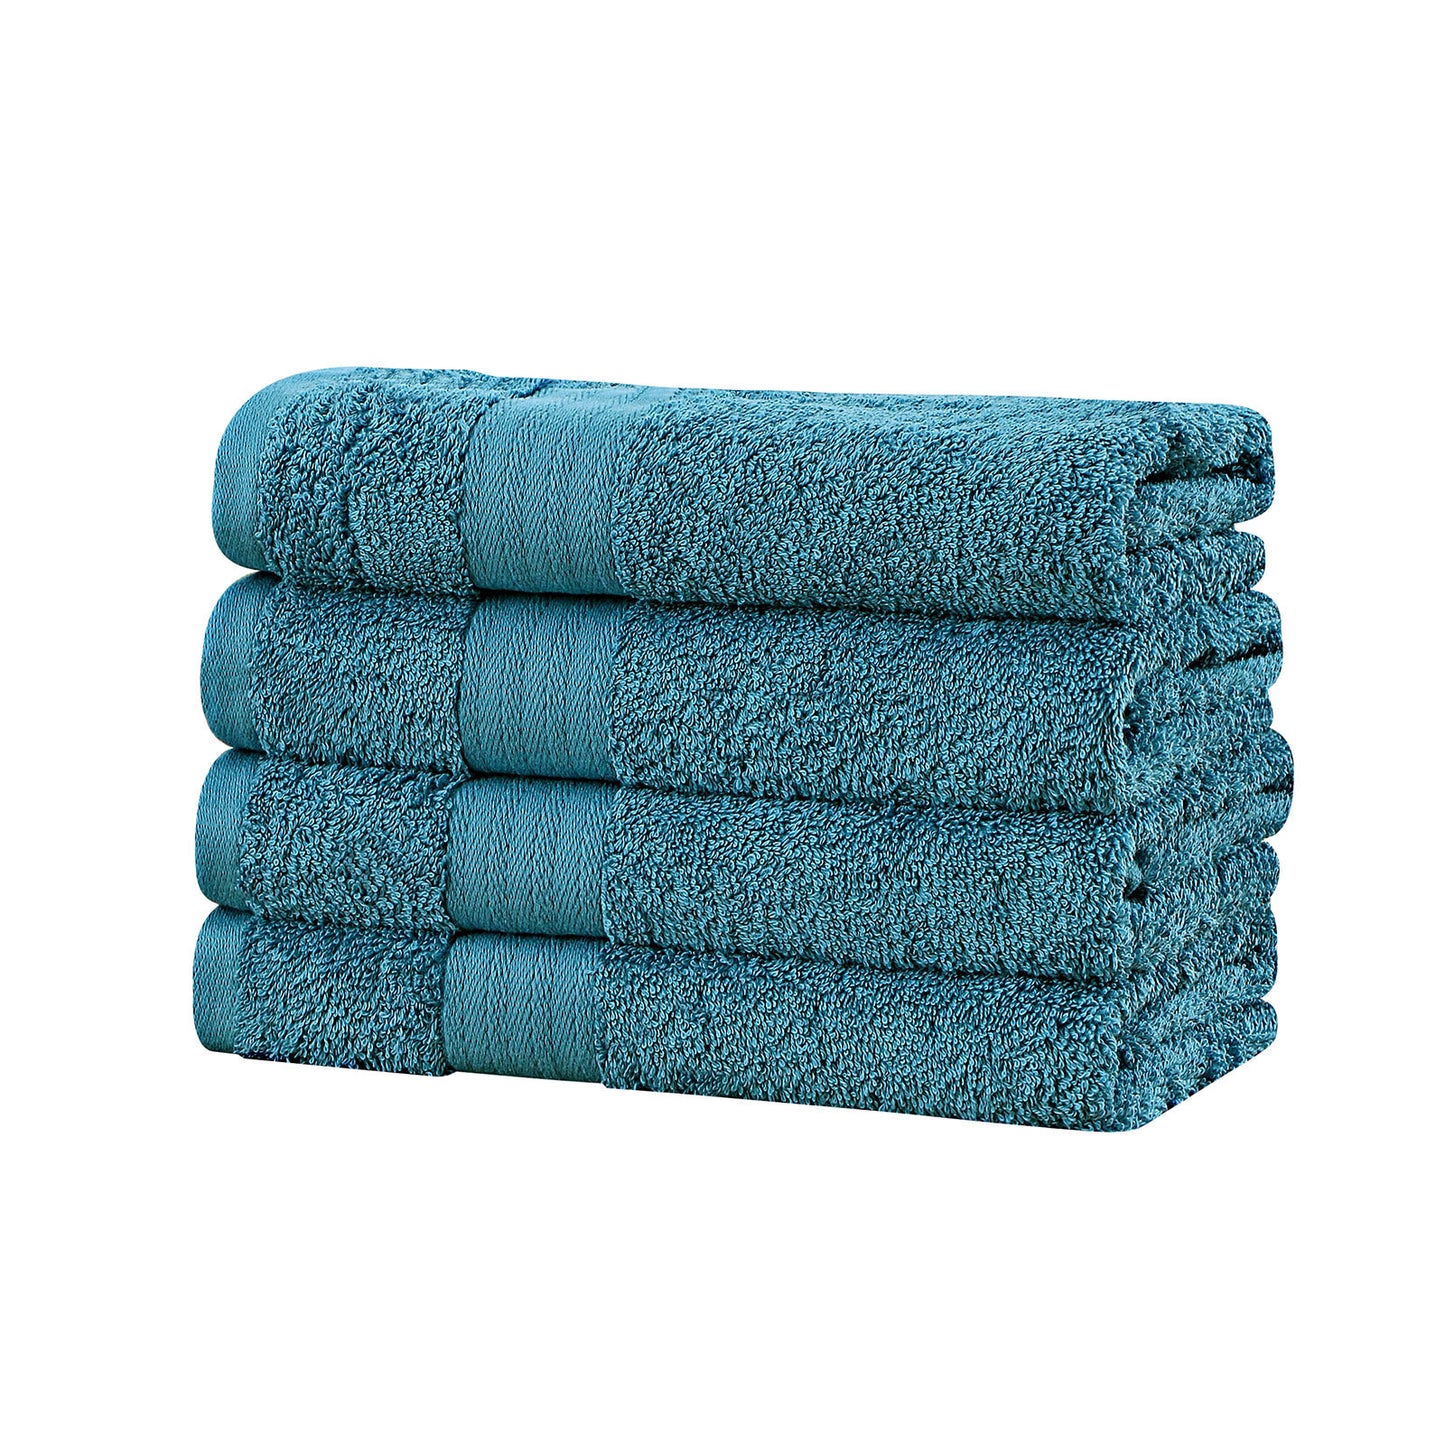 Linenland Bath Towel 4 Piece Cotton Hand Towels Set - Blue - BM House & Garden